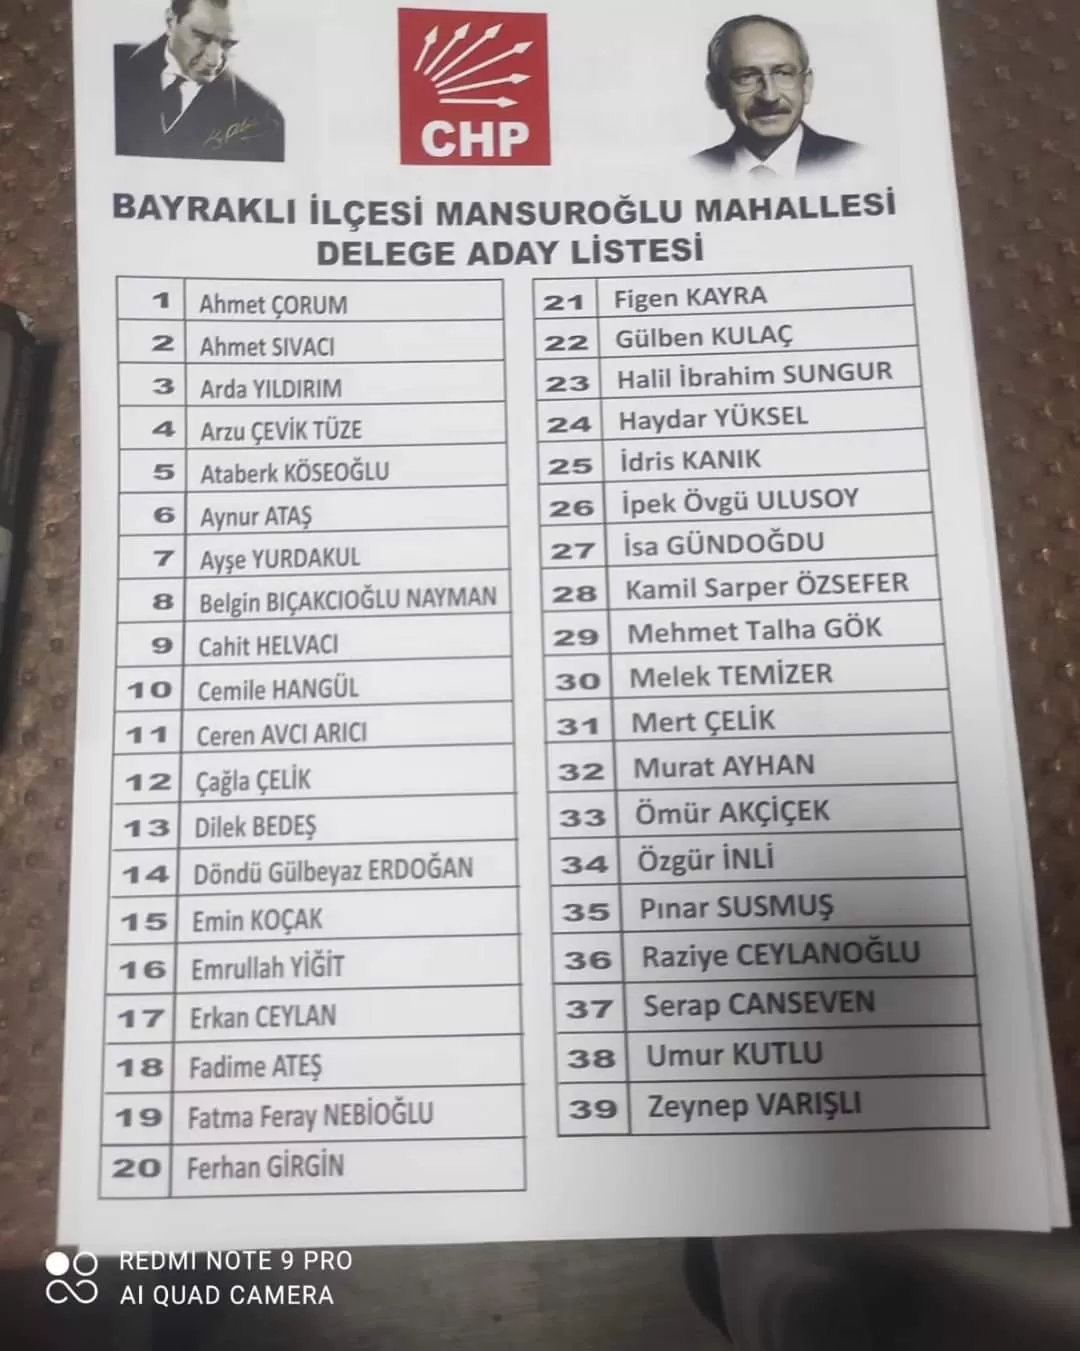 Cumhuriyet Halk Partisi delege seçimlerinde gençlik kotası doldurulması için, CHP örgütüne üye olan Emrullah Yiğit isimli genç partilinin ismi izinsiz listeye eklendi.